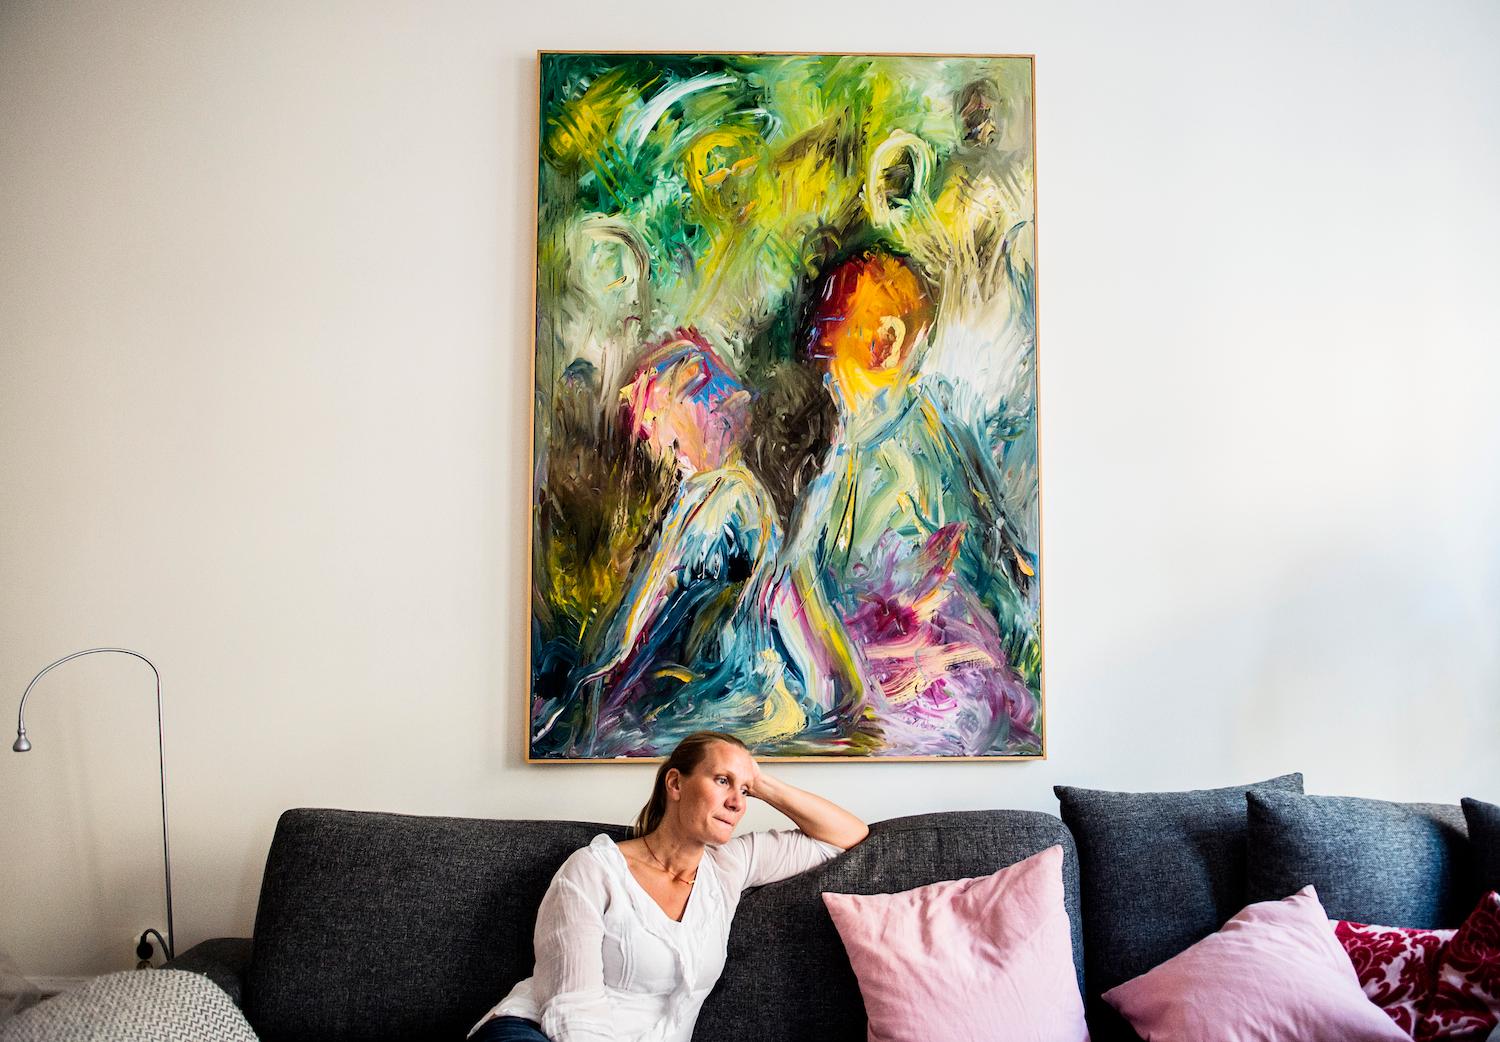 Åsa Geuken var 14 år när hennes bror Mats, då 20, insjuknade i schizofreni. Brodern har målat den färgsprakande tavlan i olja som pryder väggen i Åsas hem.